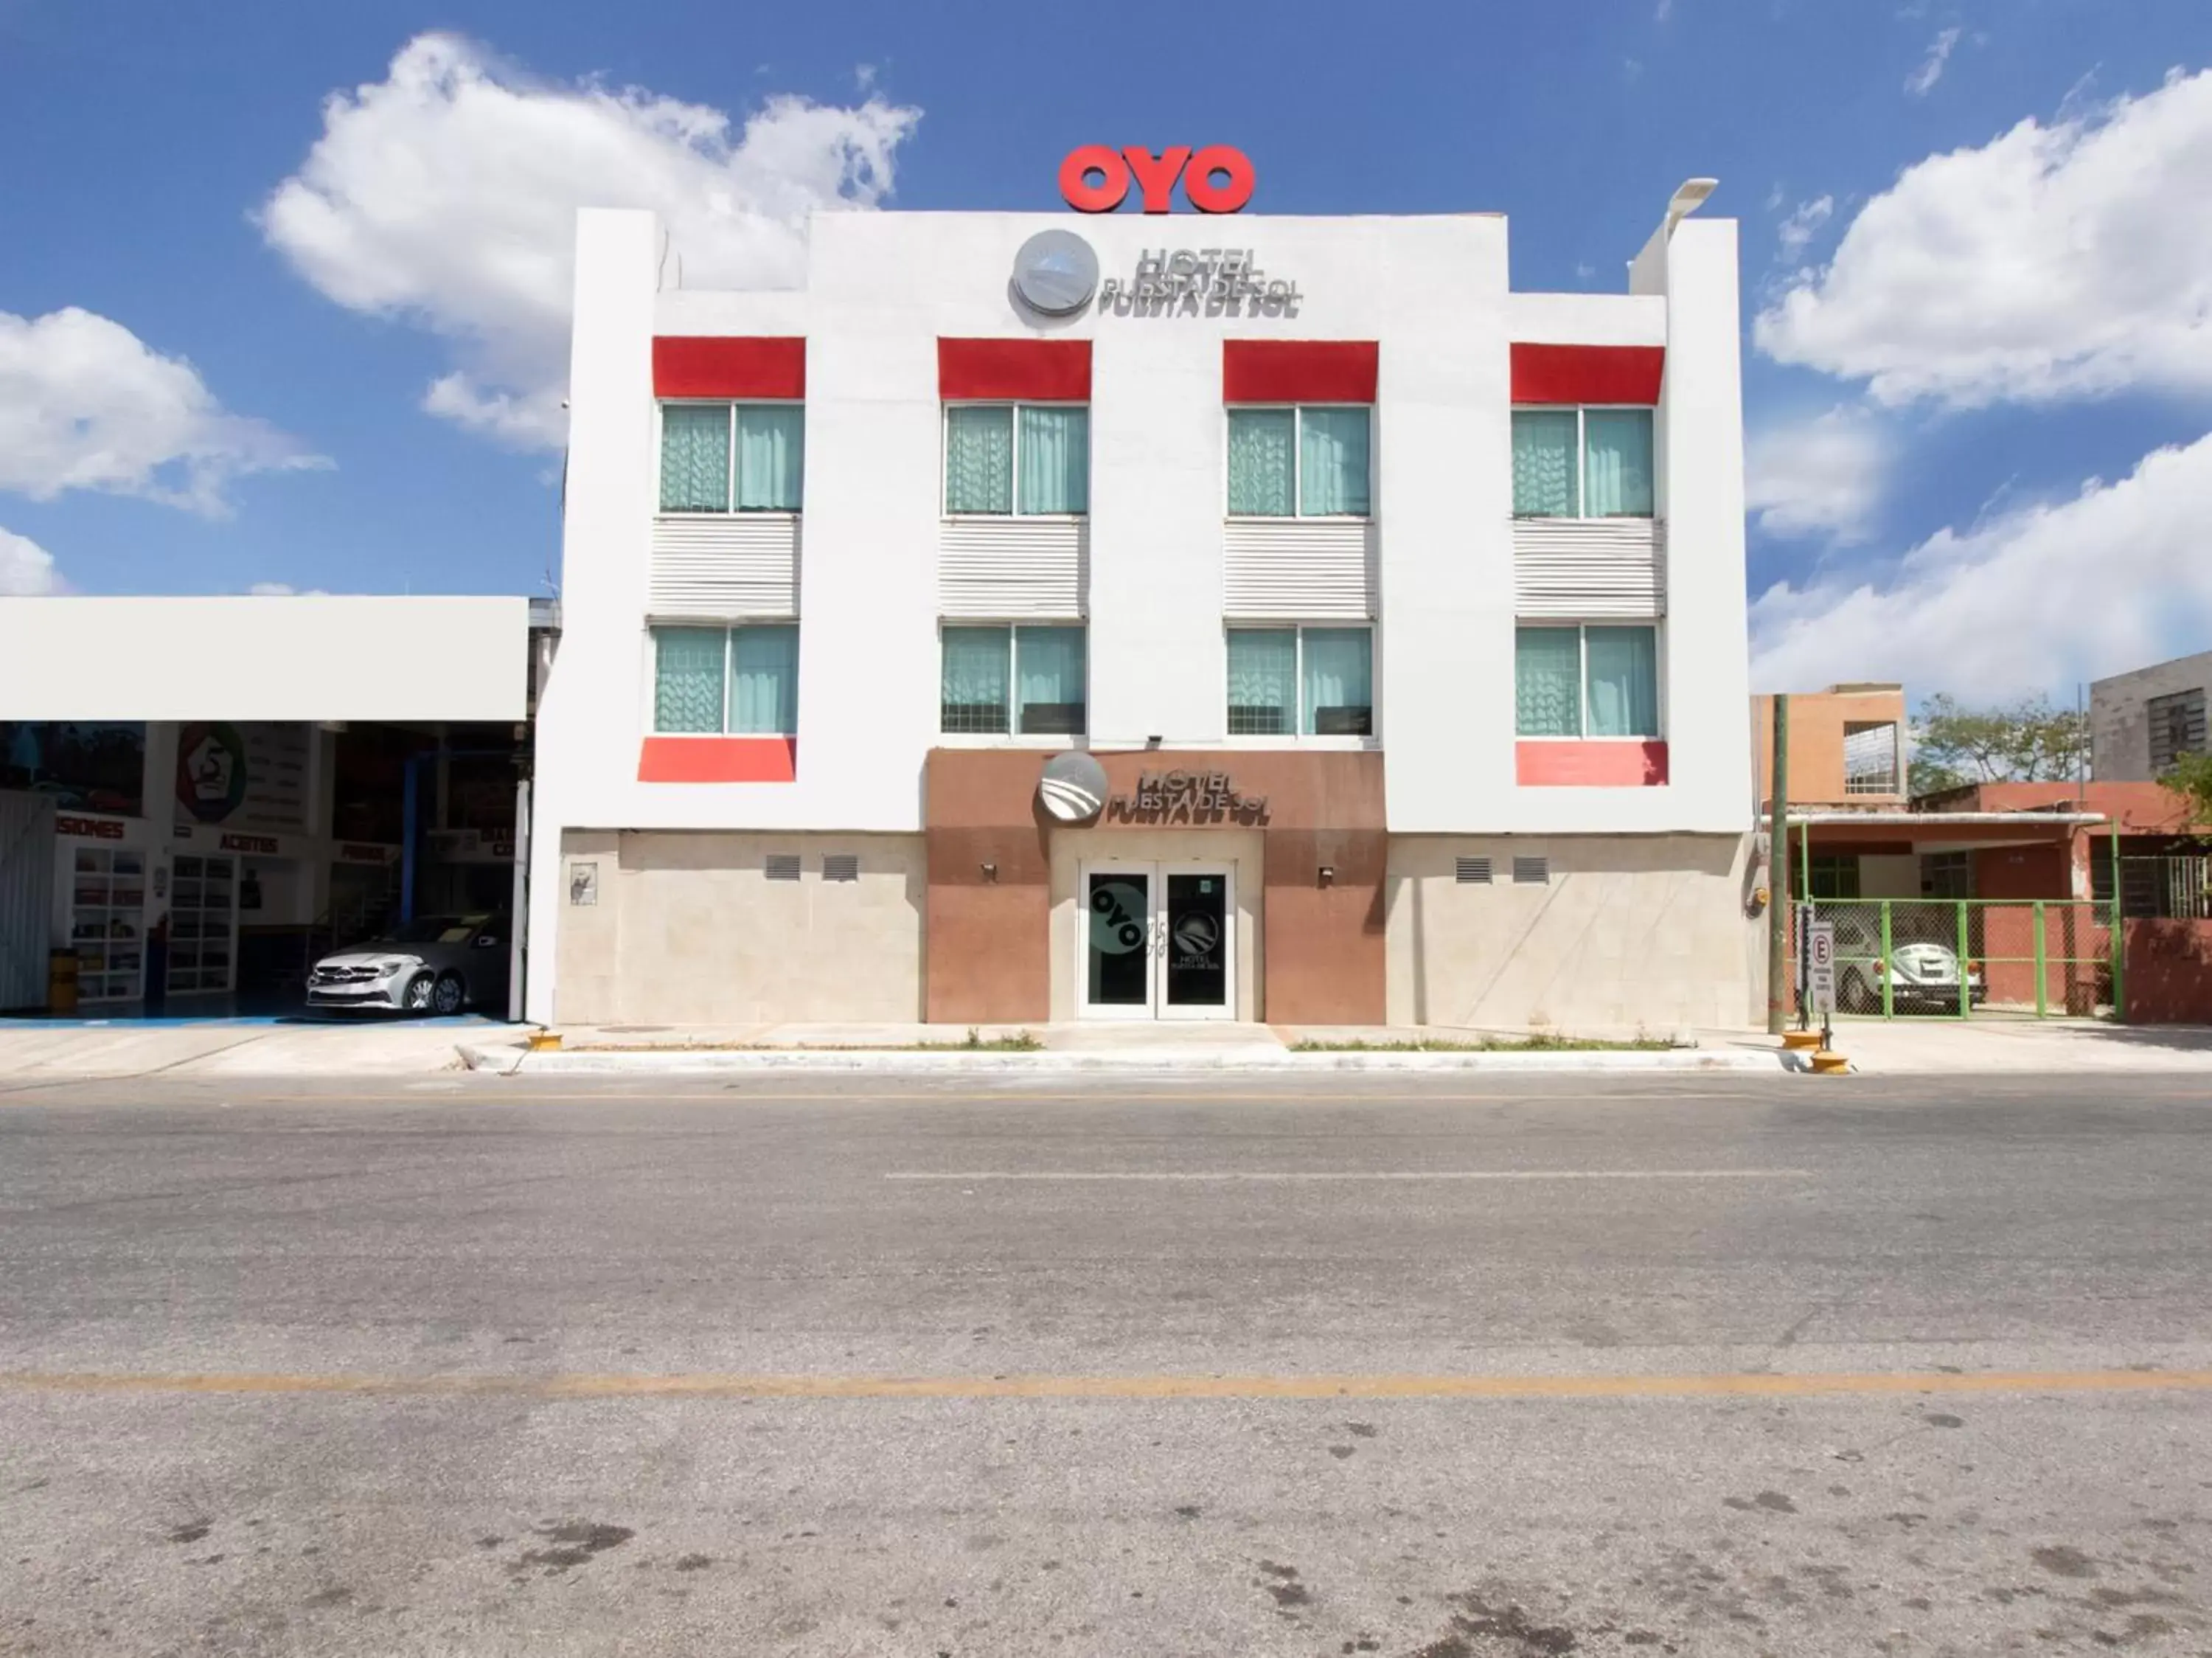 Property Building in OYO Hotel Puesta del Sol, Santa Ana, Campeche